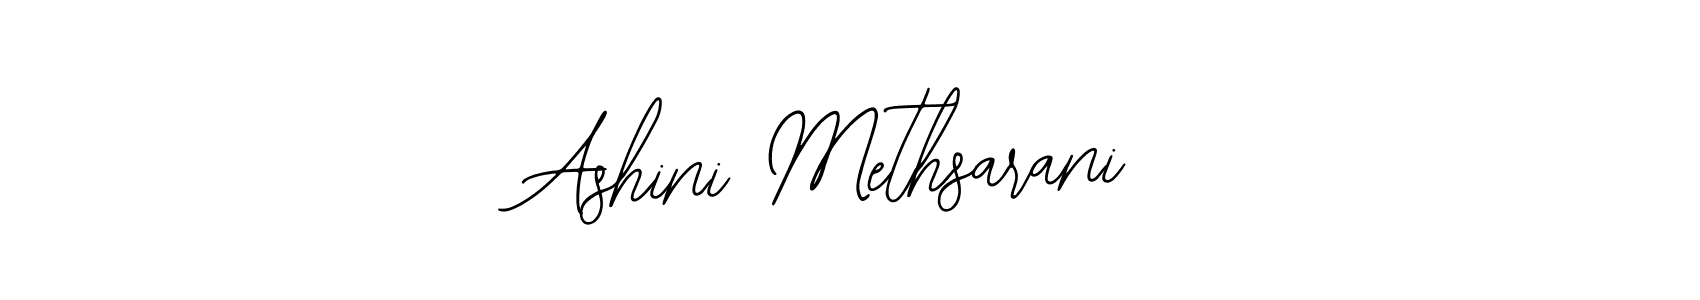 How to make Ashini Methsarani signature? Bearetta-2O07w is a professional autograph style. Create handwritten signature for Ashini Methsarani name. Ashini Methsarani signature style 12 images and pictures png